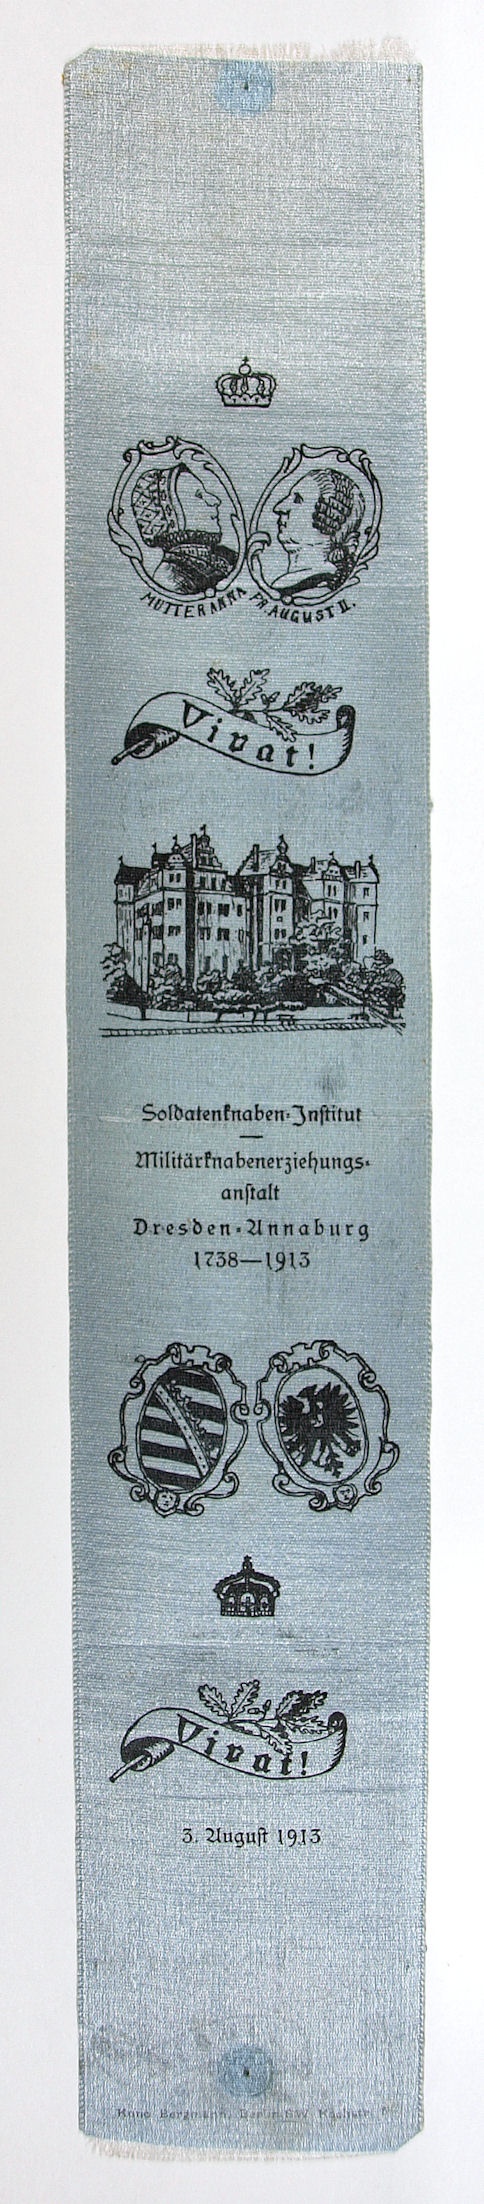 Vivatband Soldatenknaben-Institut Dresden-Annaburg 1738-1913 (Museum Weißenfels - Schloss Neu-Augustusburg CC BY-NC-SA)